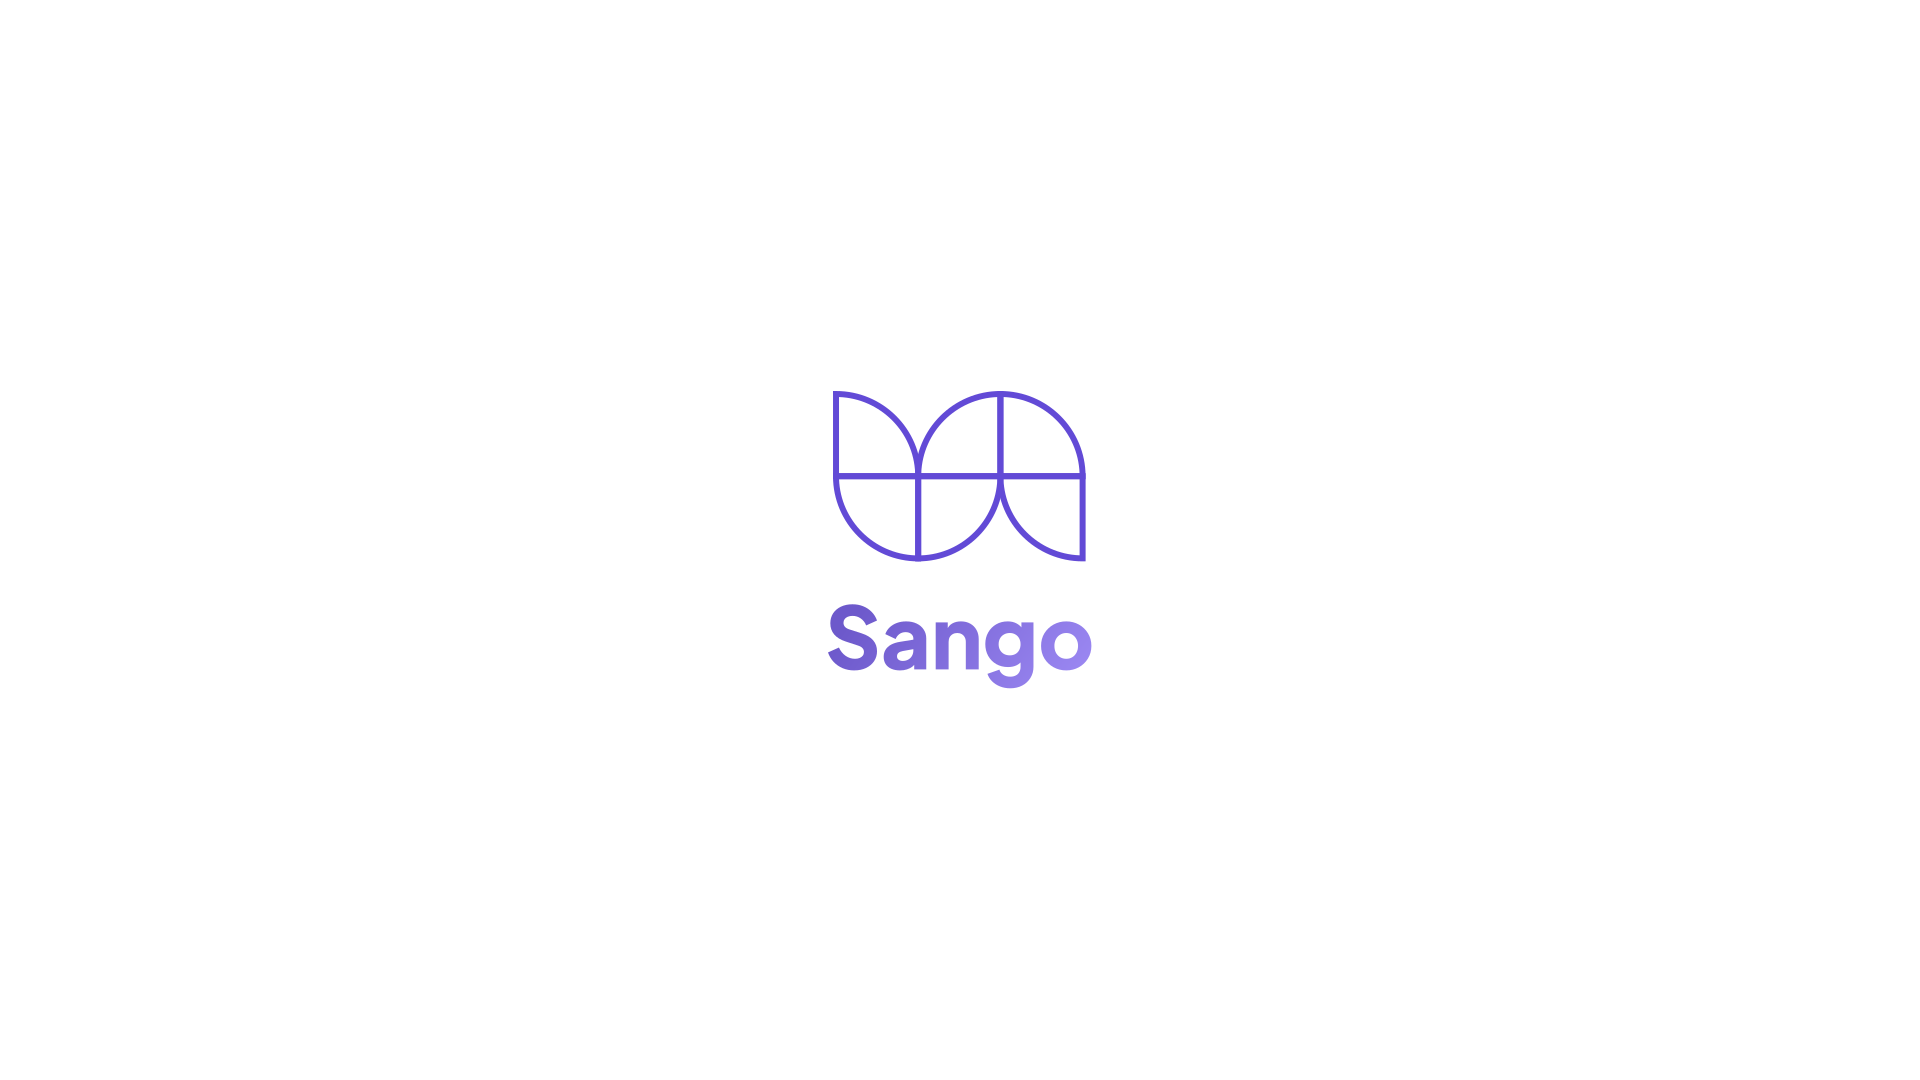 Sango Logo